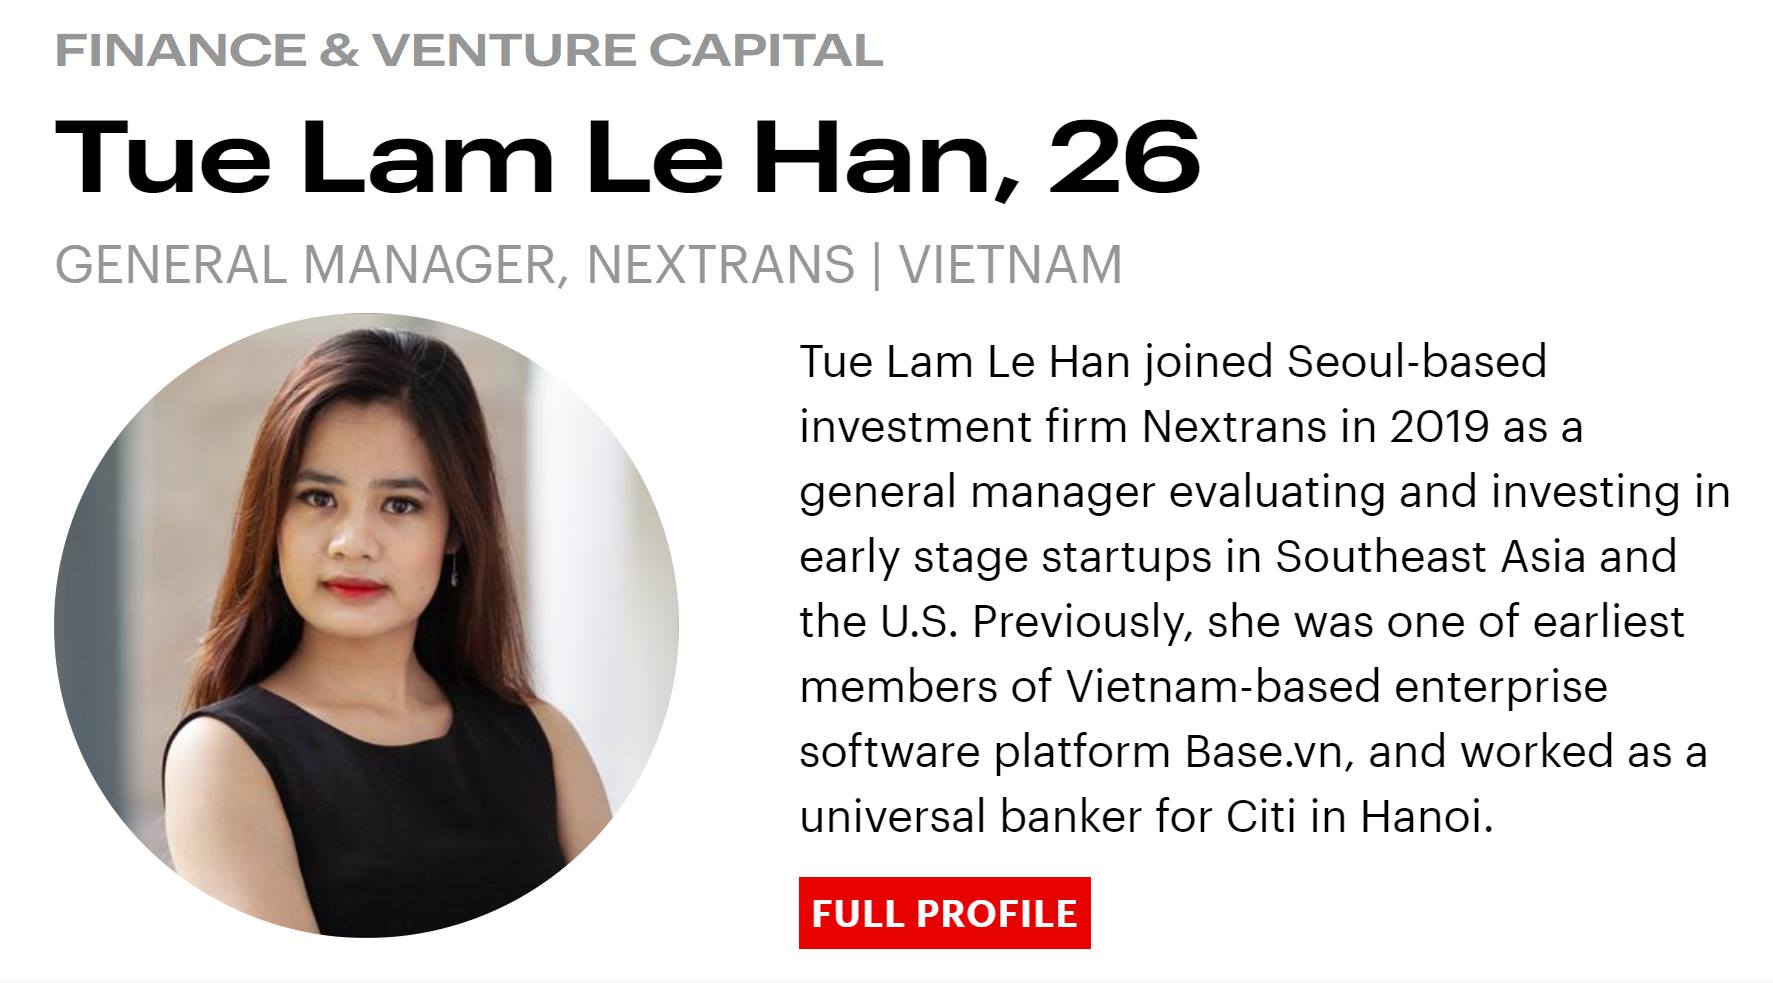 Những điều chưa kể của Lê Hàn Tuệ Lâm - CHS chuyên Anh - 1 trong 3 gương mặt Việt Nam "30 Under 30” được Tạp chí Forbes công bố.